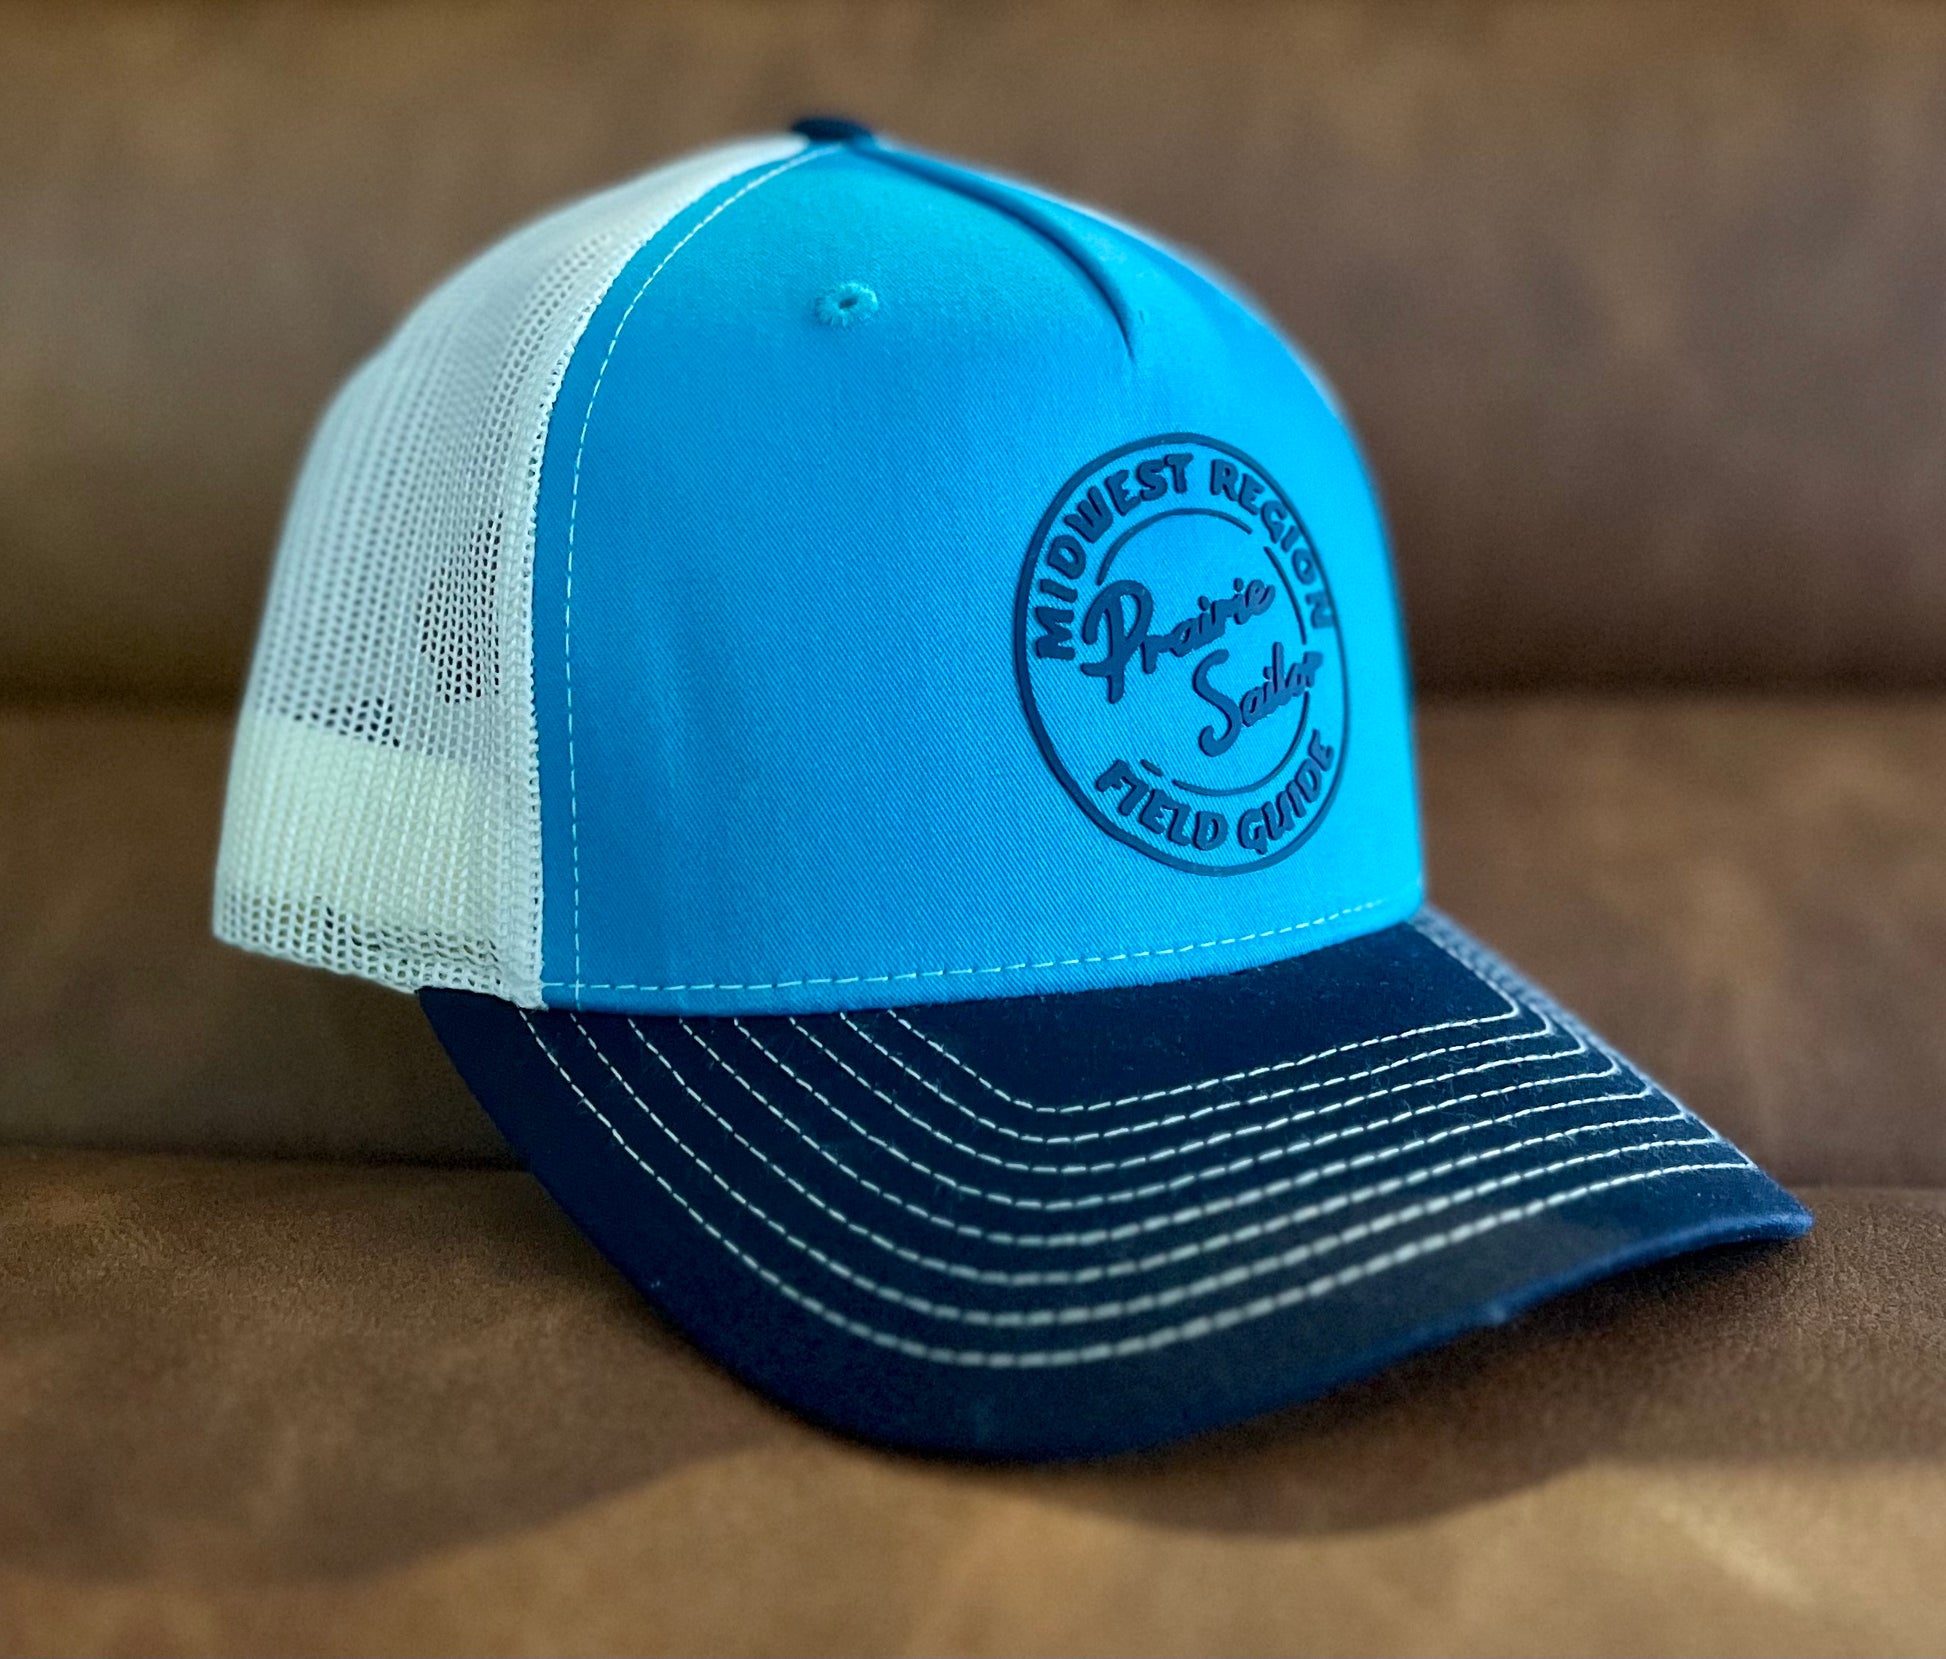 Trucker Hats for Men, Happy Hat